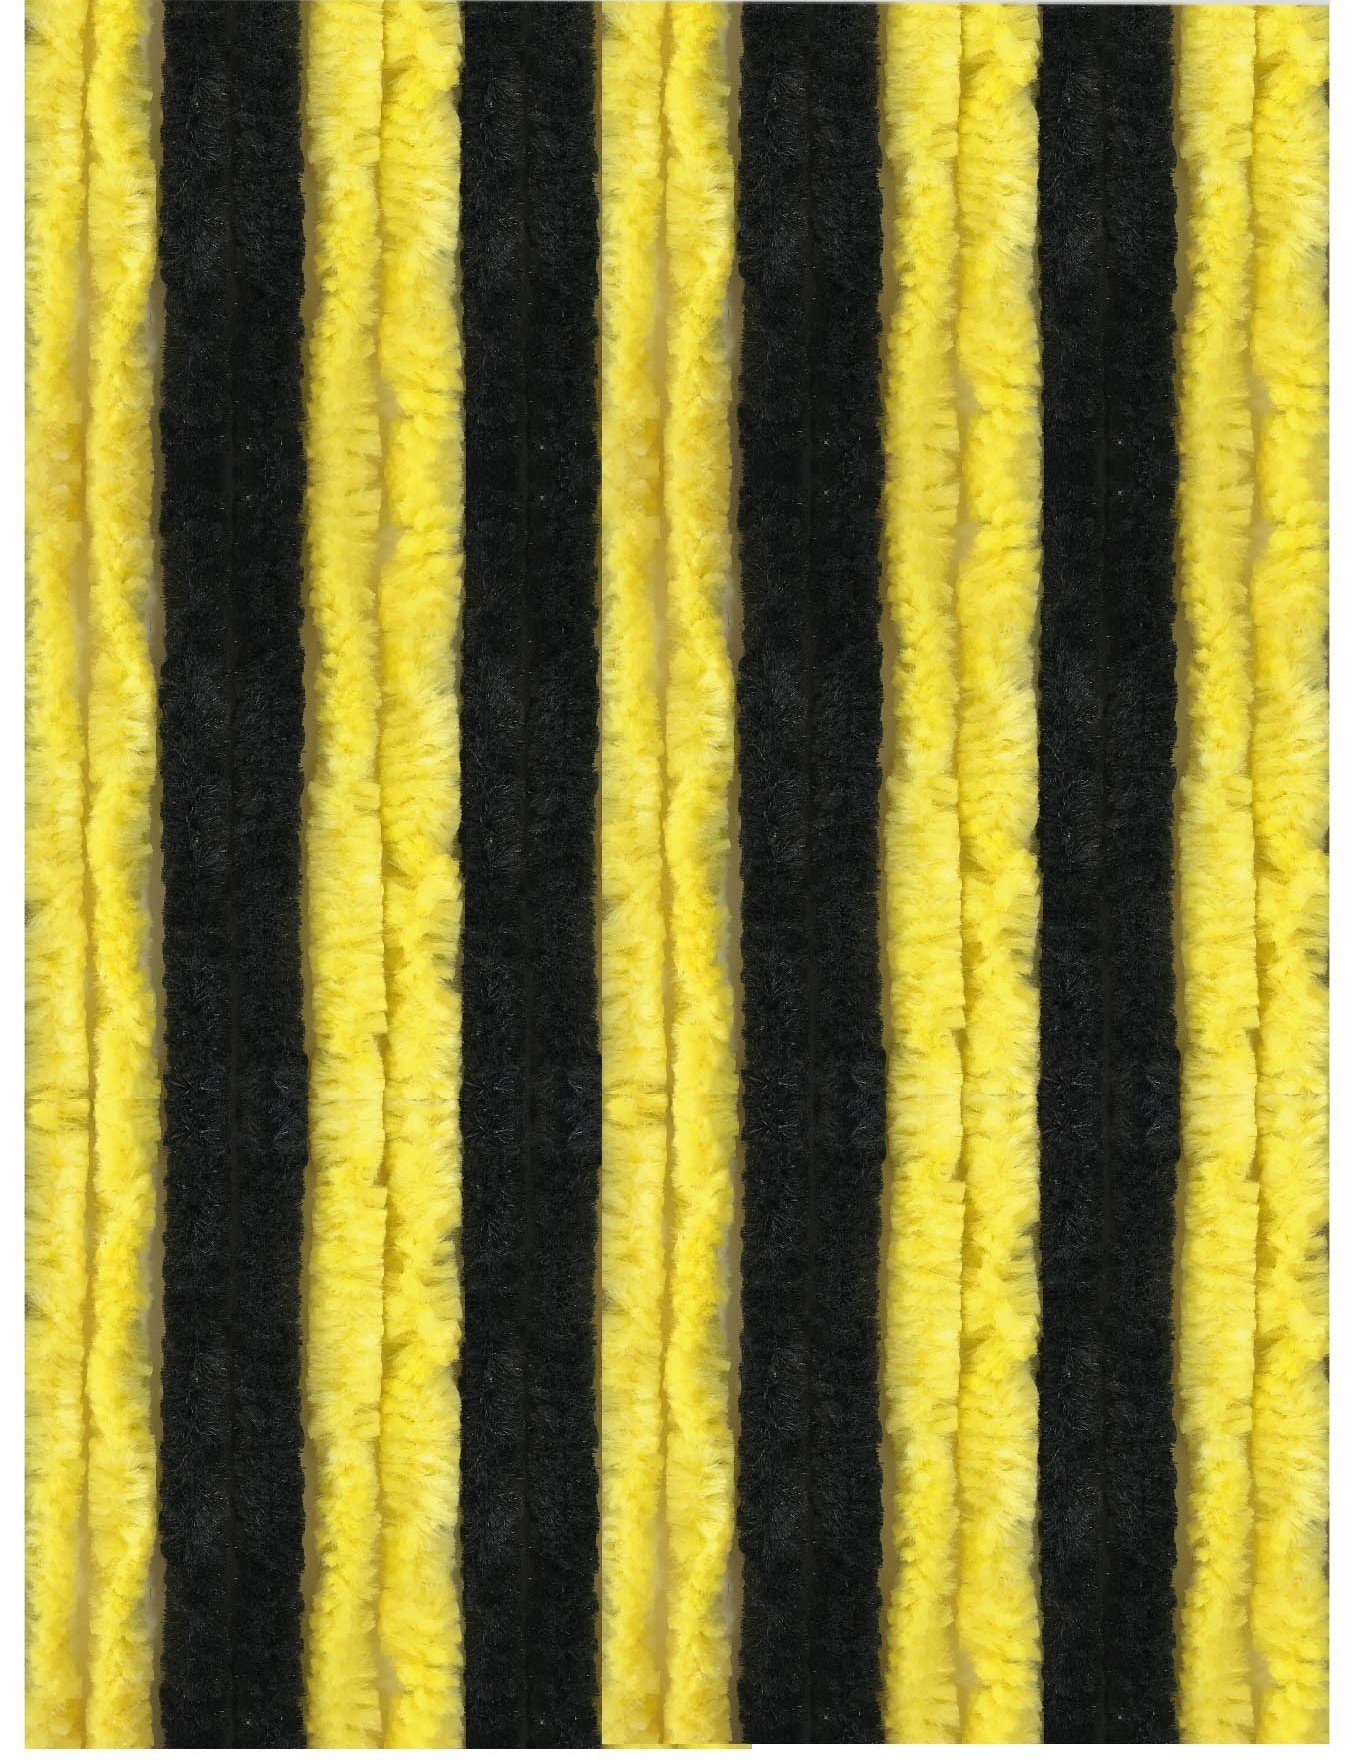 Türvorhang Flauschi, Arsvita, Ösen (1 St), blickdicht, Flauschvorhang in 80cm Breite, perfekter Insekten- und Sichtschutz, viele versch. Farben verfügbar Schwarz - Gelb